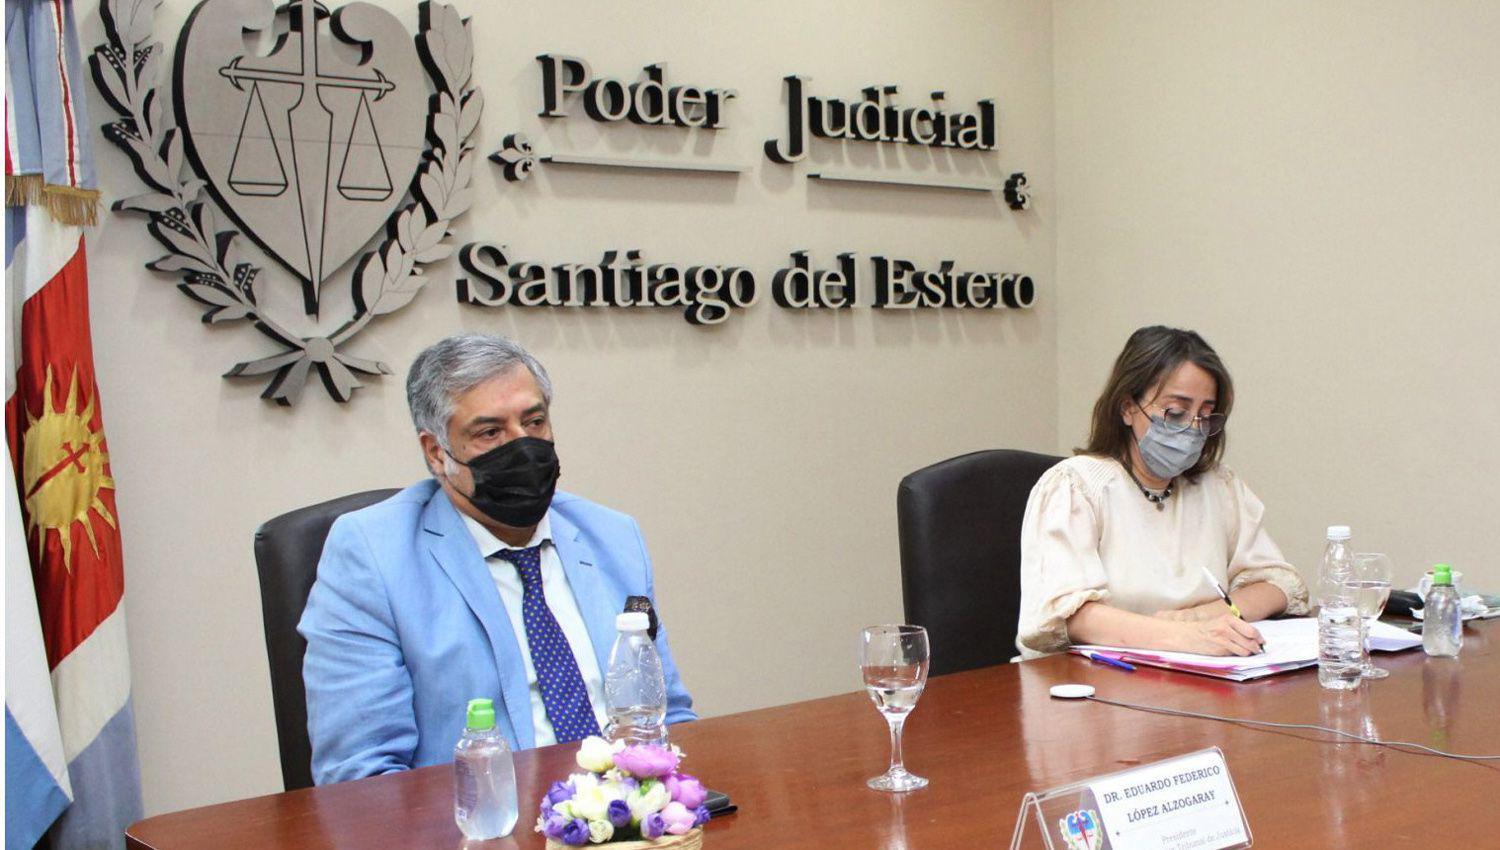 El Dr Loacutepez Alzogaray presidioacute el Consejo de la Magistratura